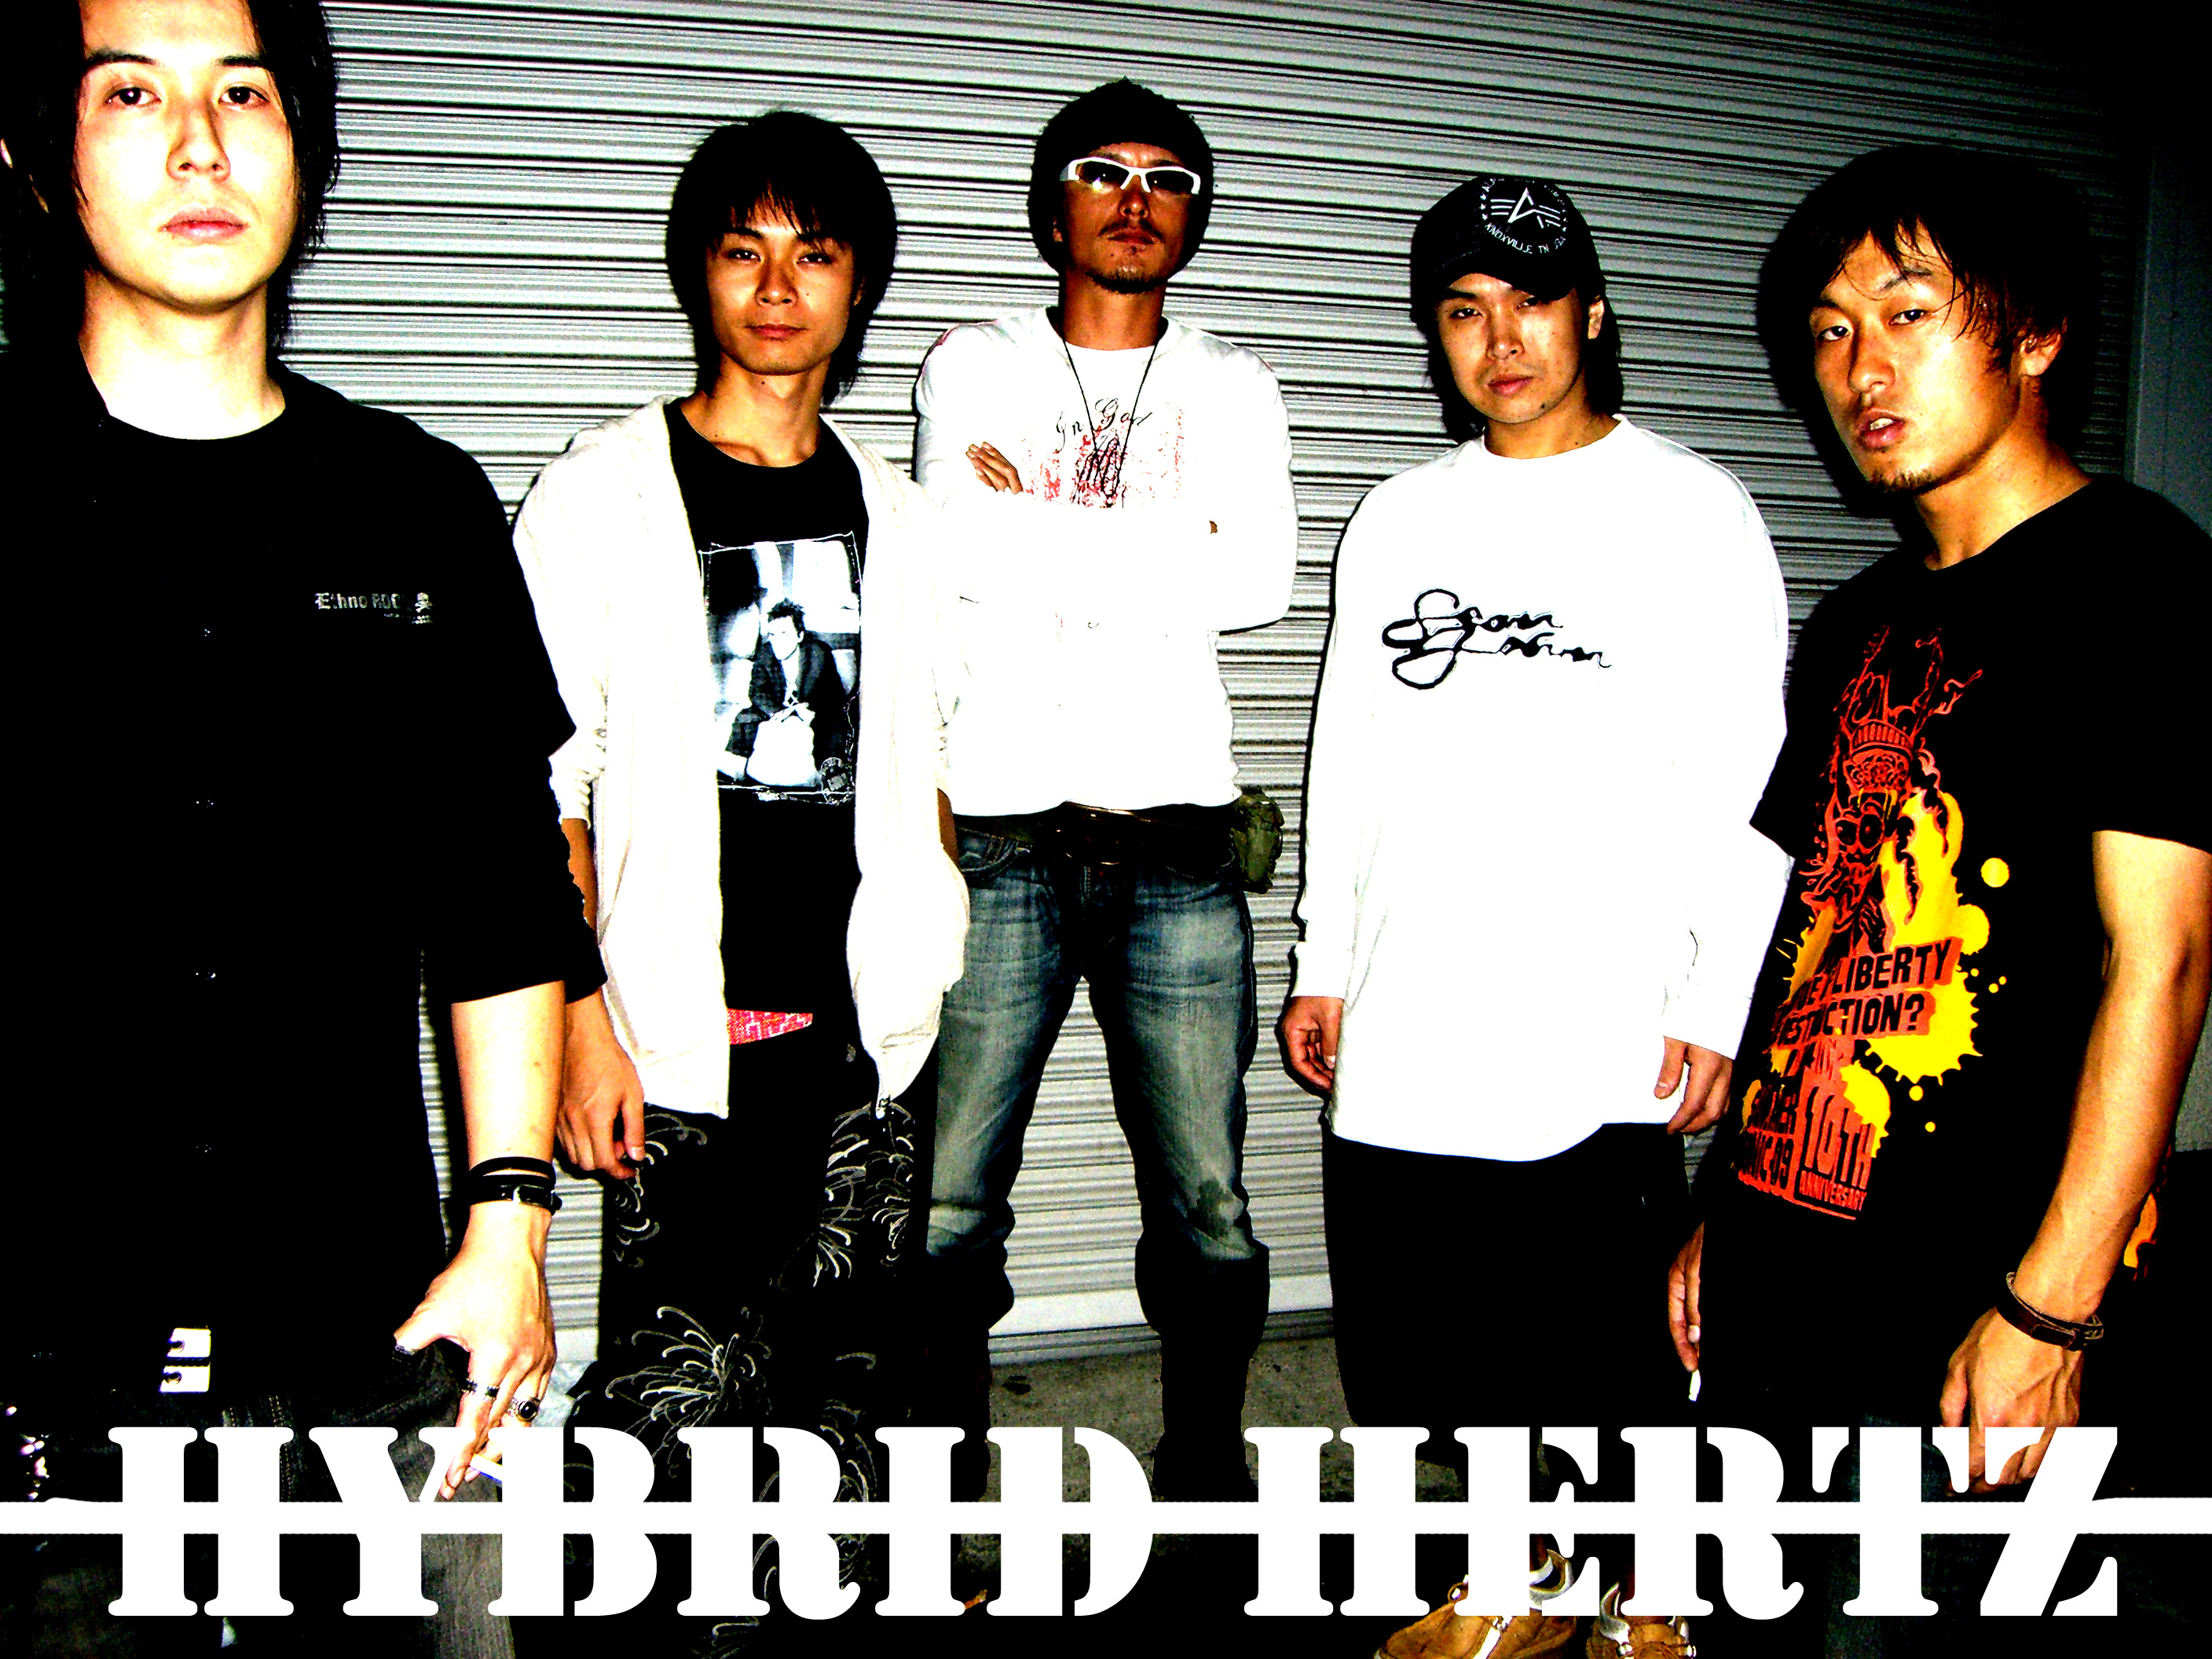 hybrid hertz